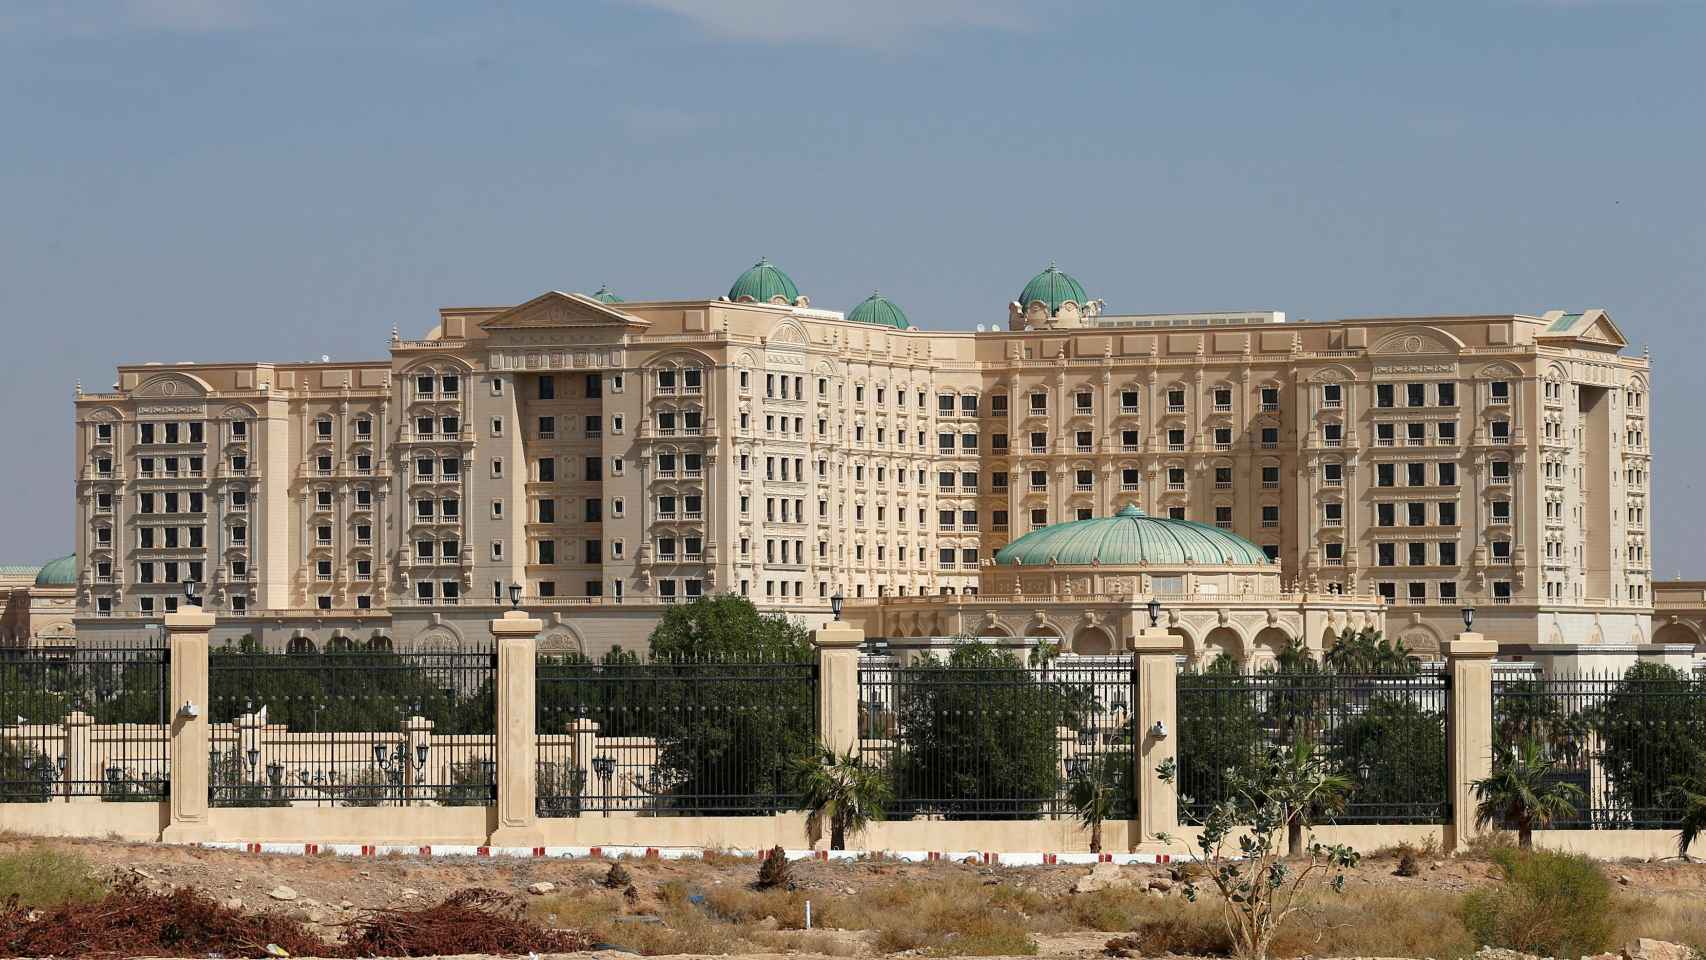 Imagen de la fachada del hotel Ritz de Riad.